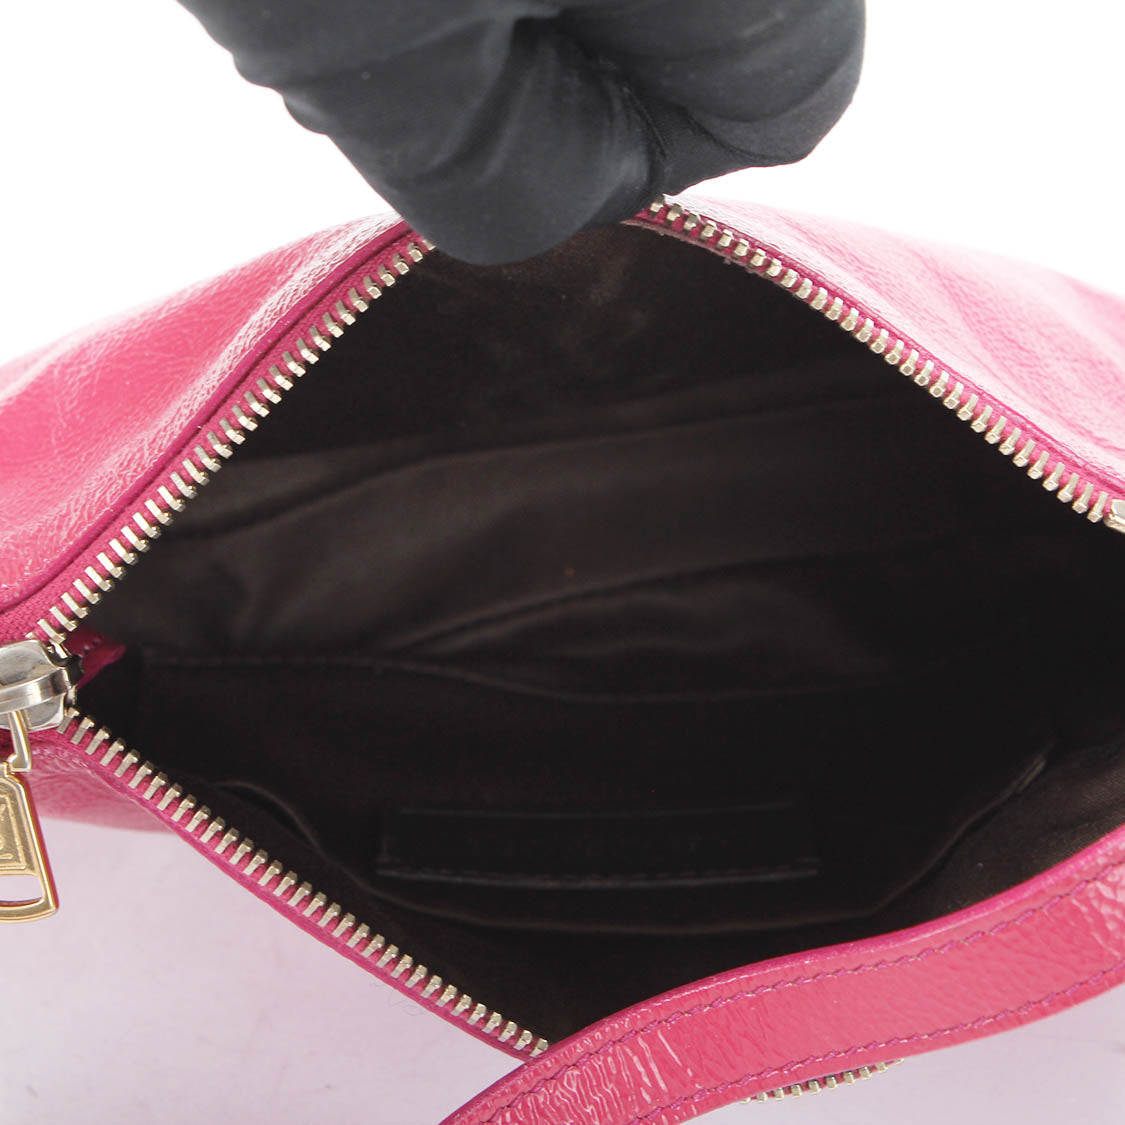 Patent Leather Monogram Shoulder Bag 203237